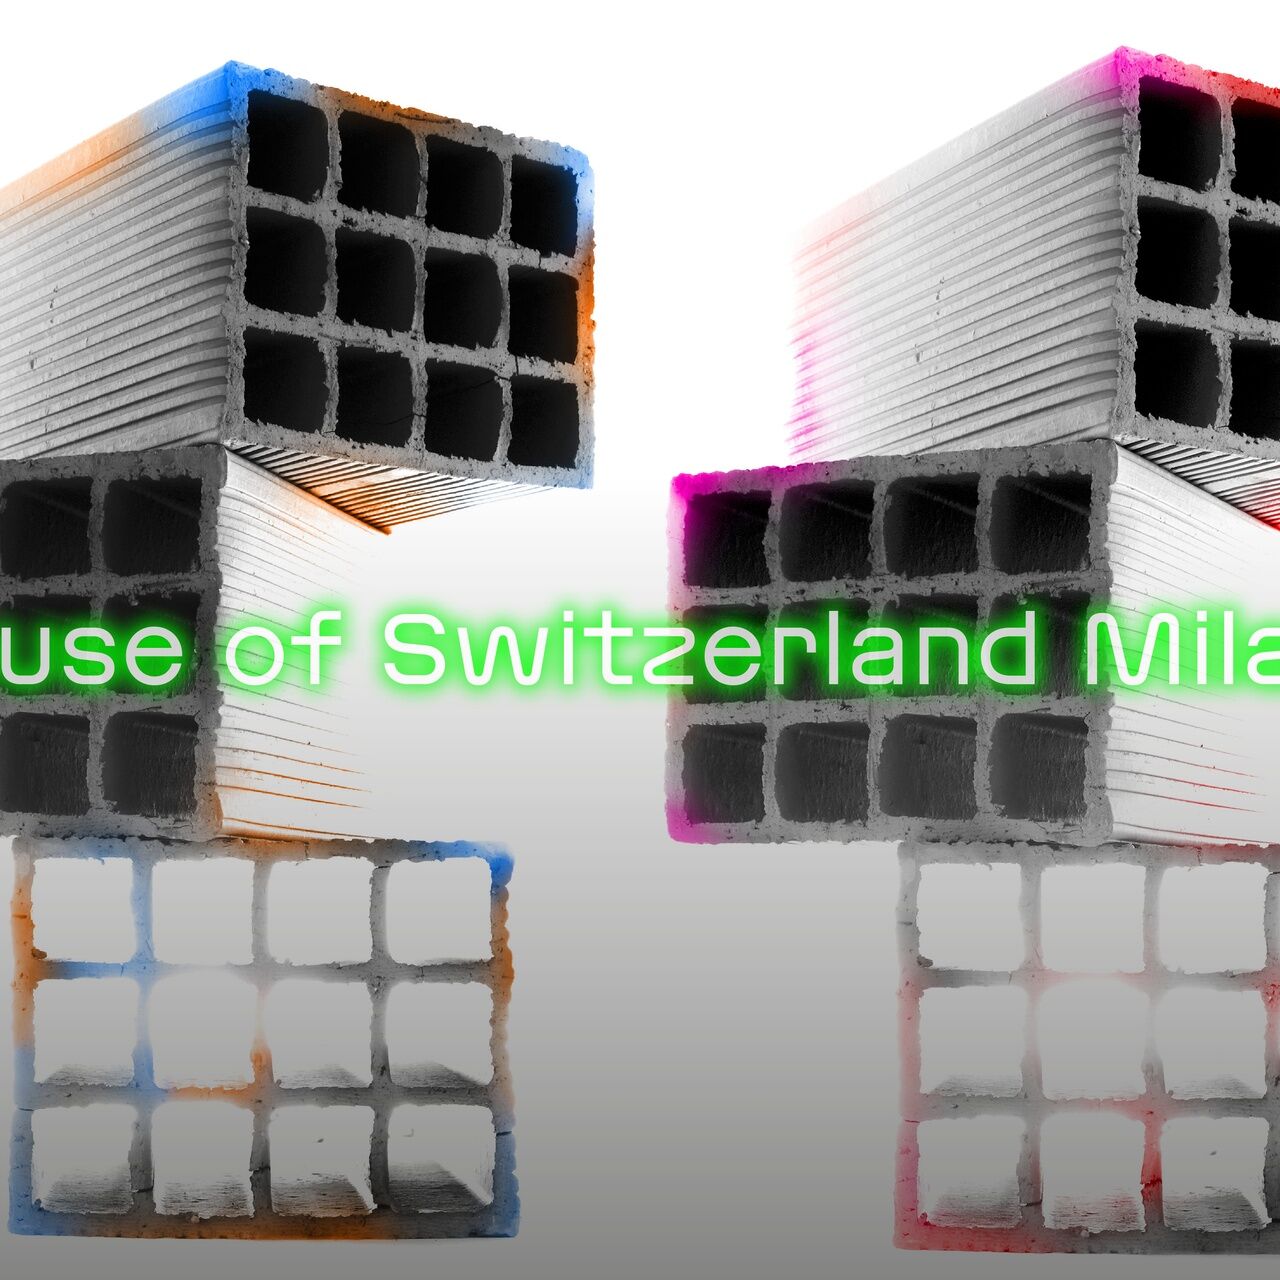 Milan Design Week: το βασικό εικαστικό της συμμετοχής της Presence Switzerland και της Pro Helvetia στην «Εβδομάδα Μόδας του Μιλάνου» από τις 17 έως τις 23 Απριλίου 2023